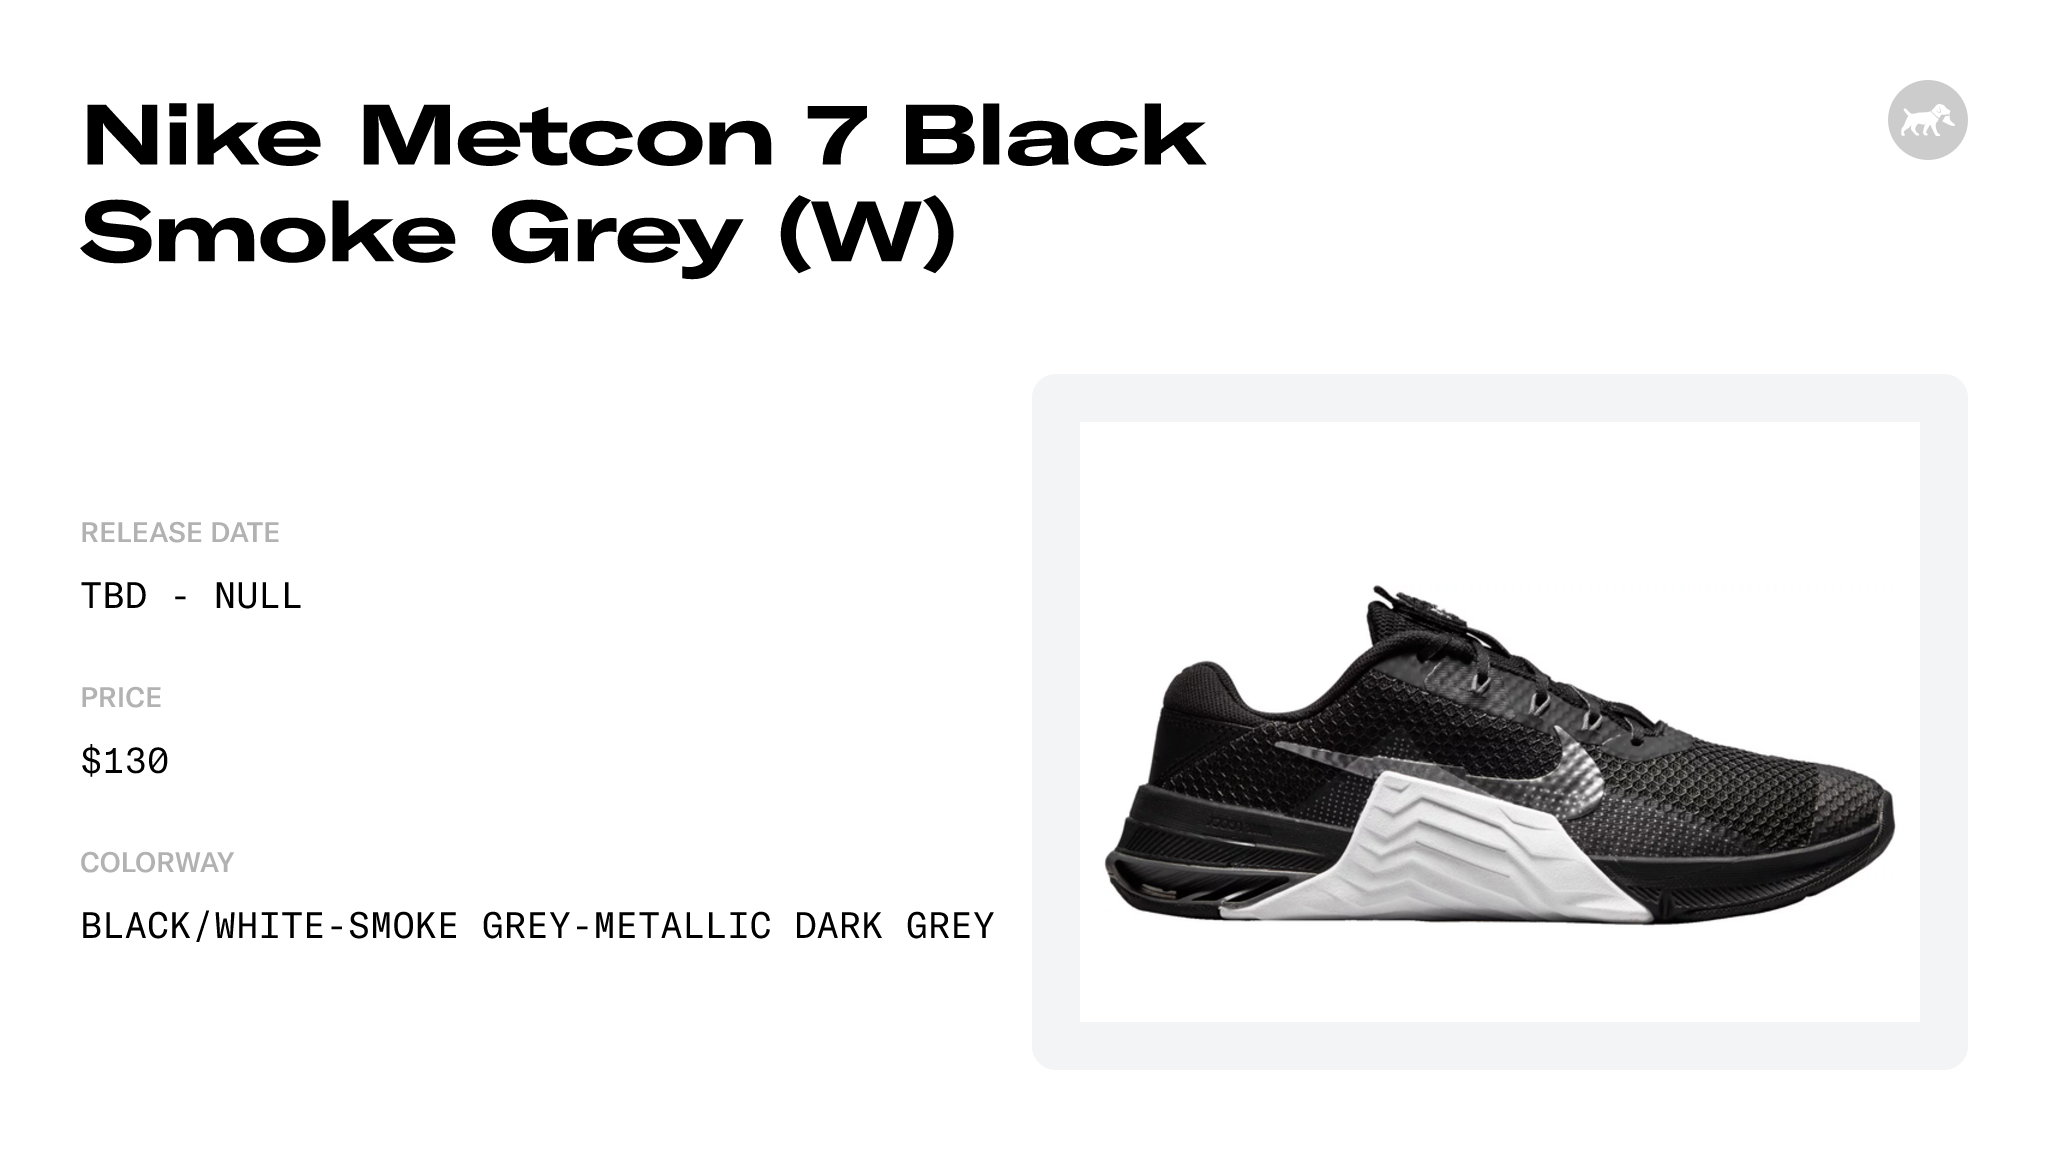 Nike Metcon 7 Black Smoke Grey (W) - CZ8280-010 Raffles and Release Date